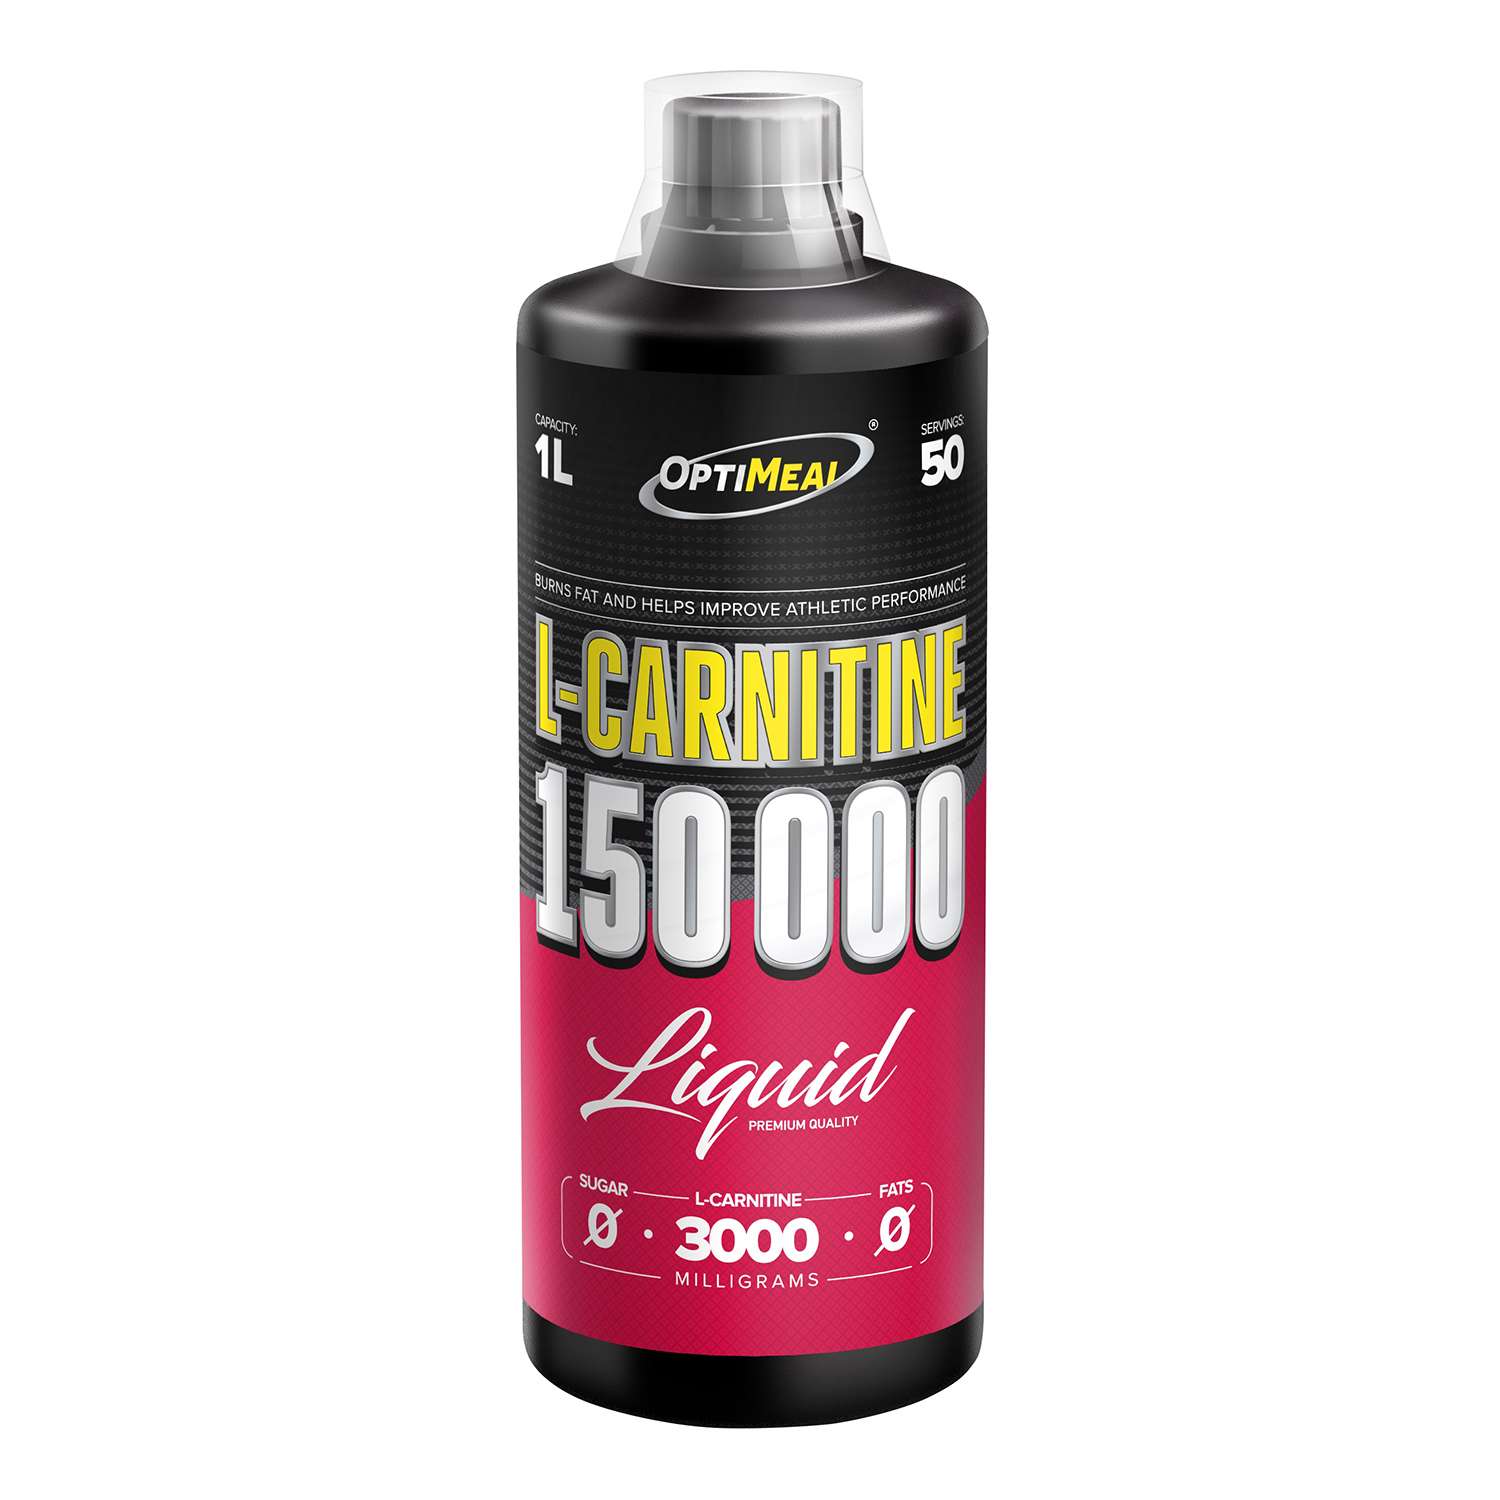 L-Карнитин OptiMeal liquid 150000 вишня 1л - фото 1